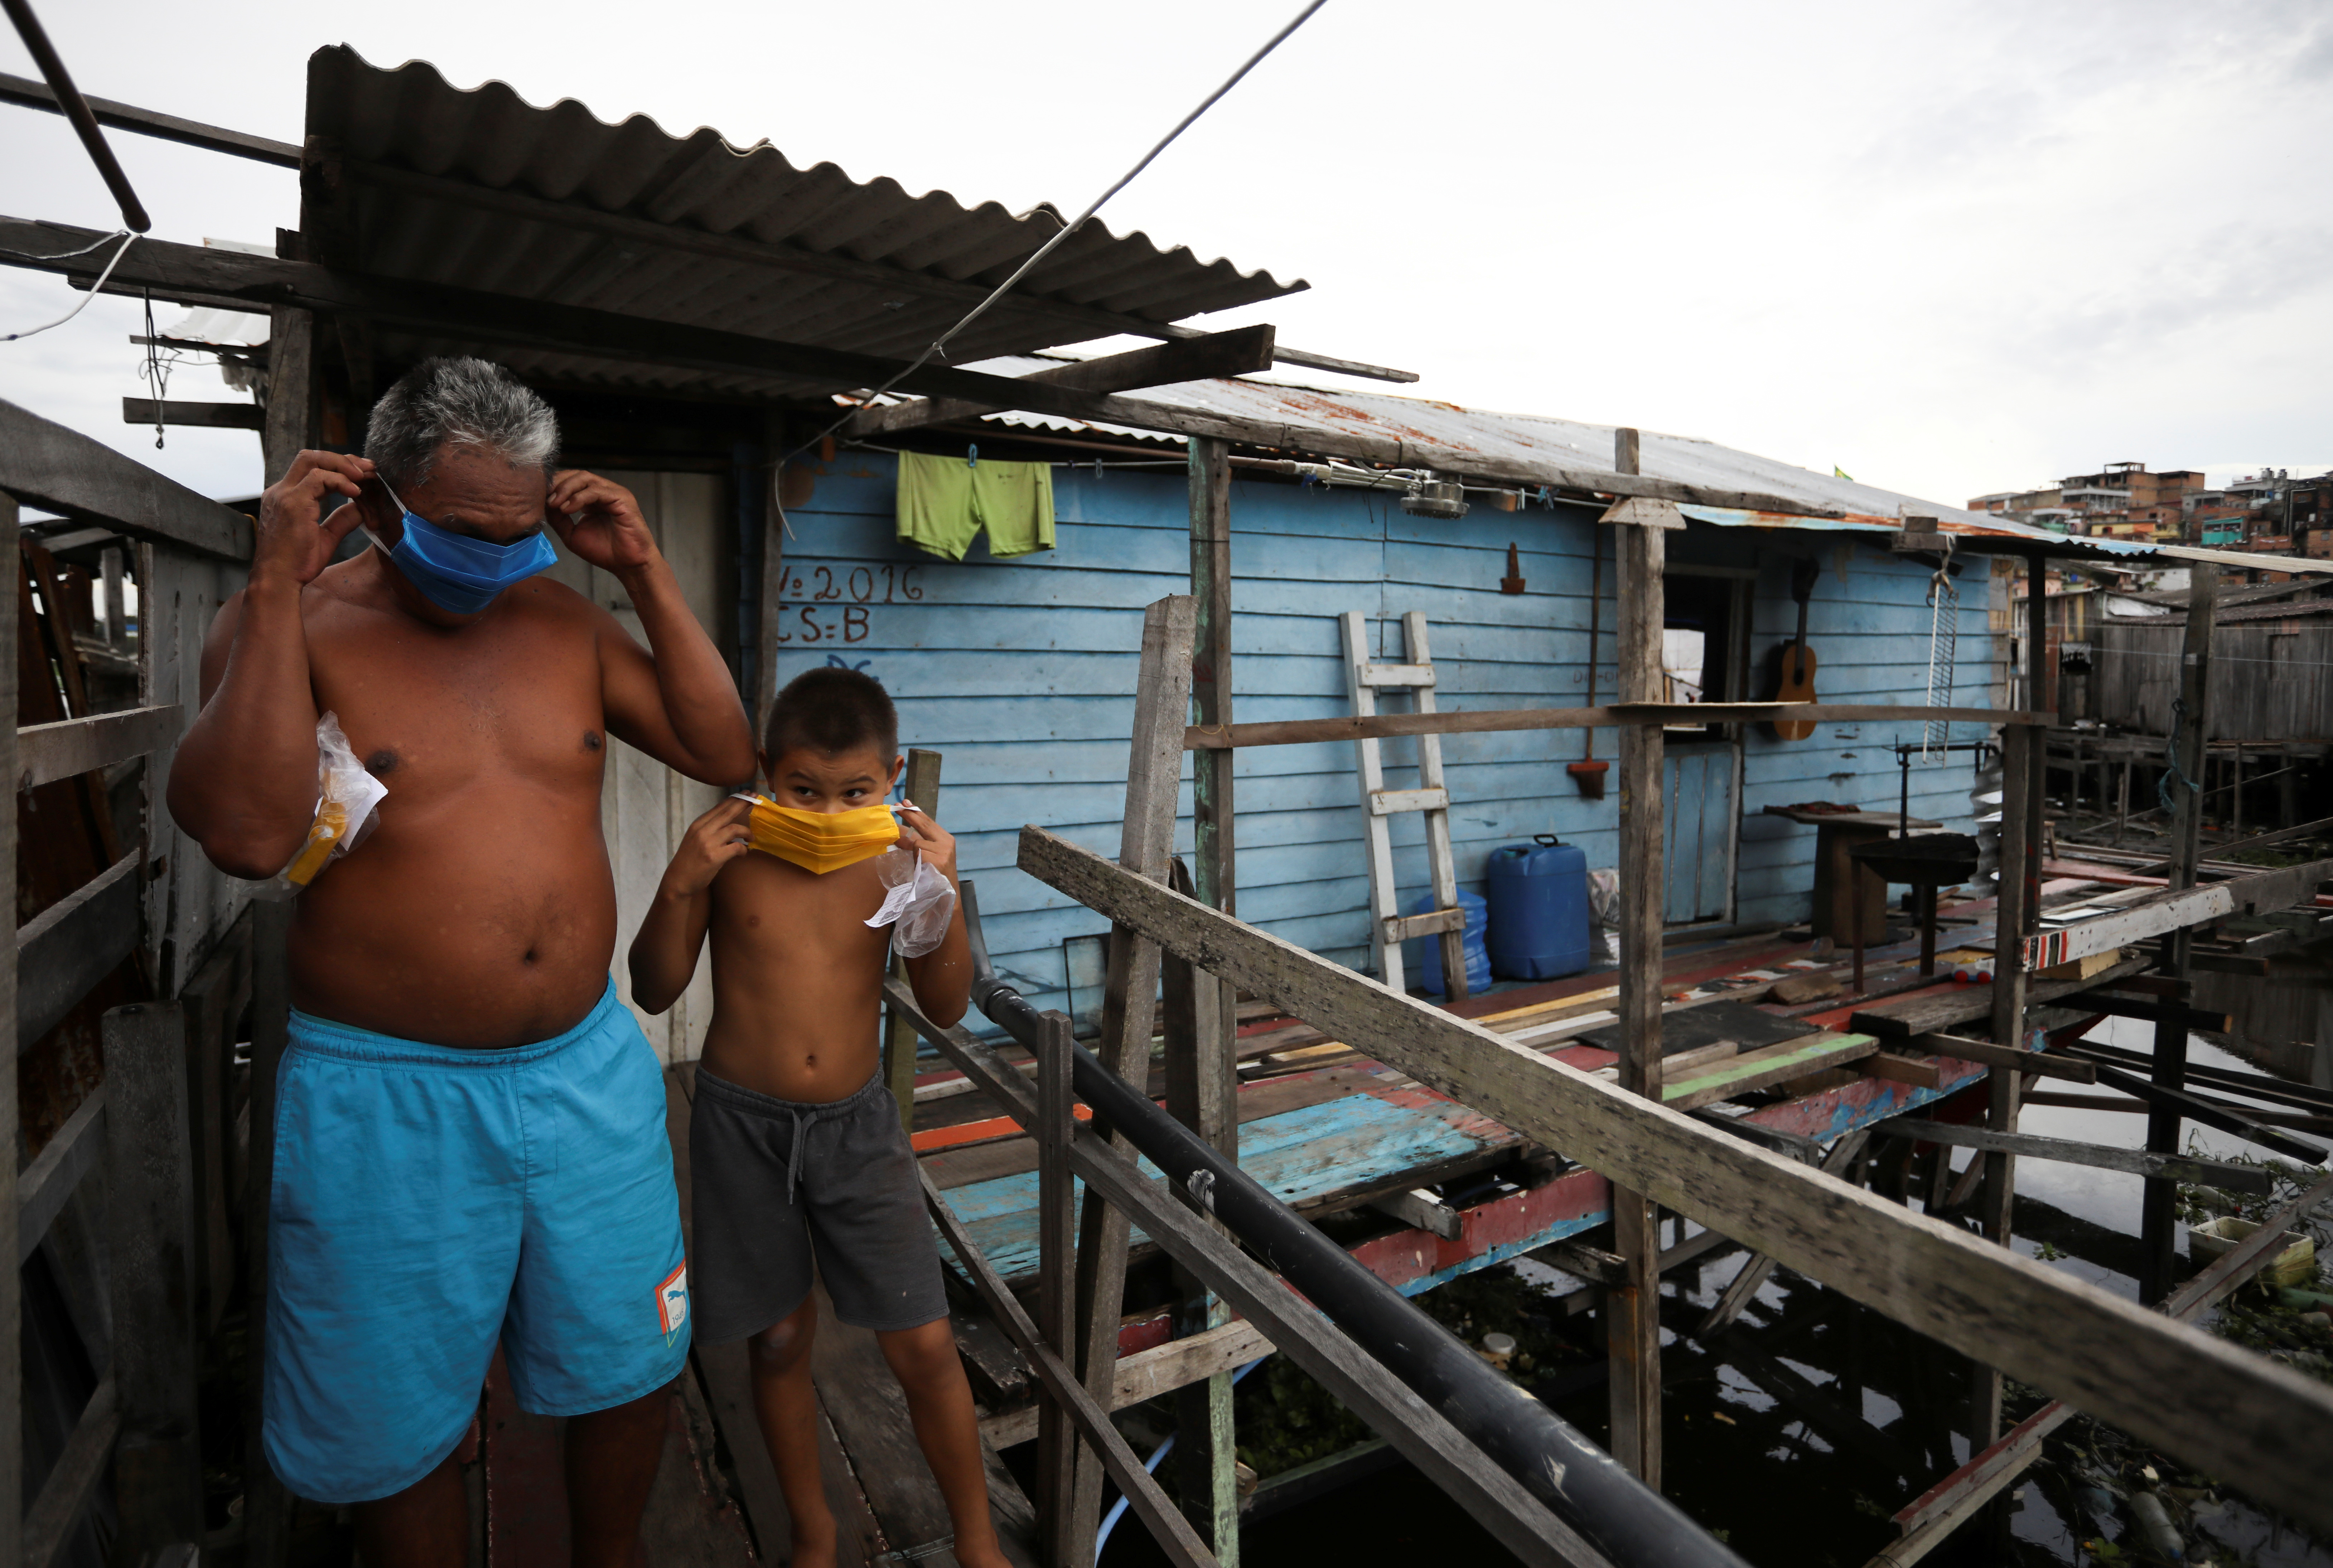 “No hay tiempo”: Habitantes de zonas pobres de América Latina lideran batalla contra el coronavirus